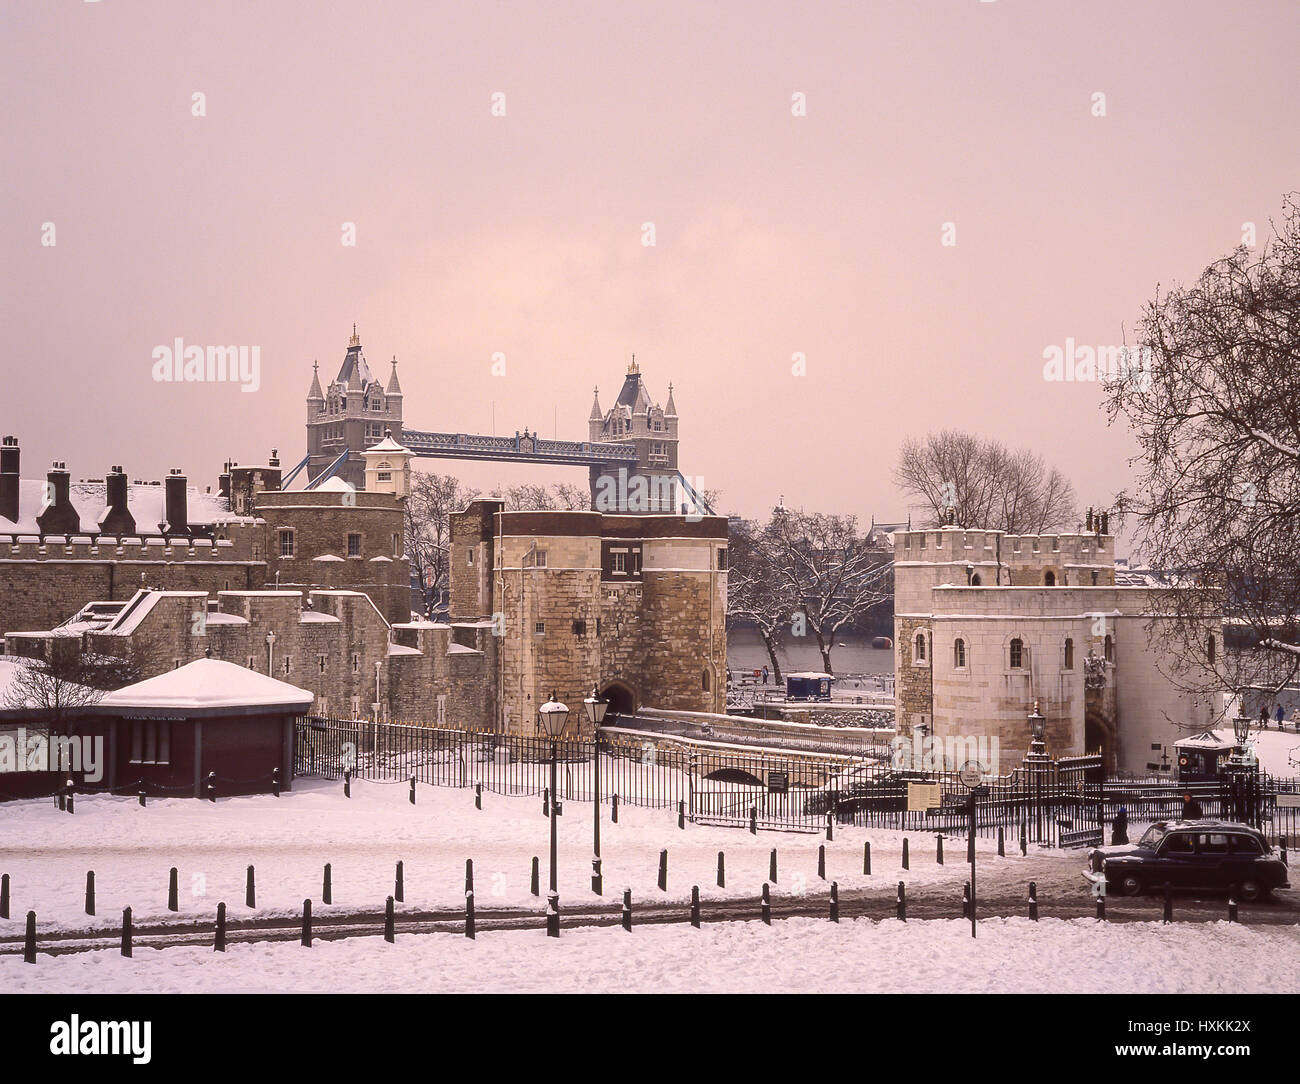 La Tour de Londres en hiver la neige, London Borough de Tower Hamlets, Greater London, Angleterre, Royaume-Uni Banque D'Images